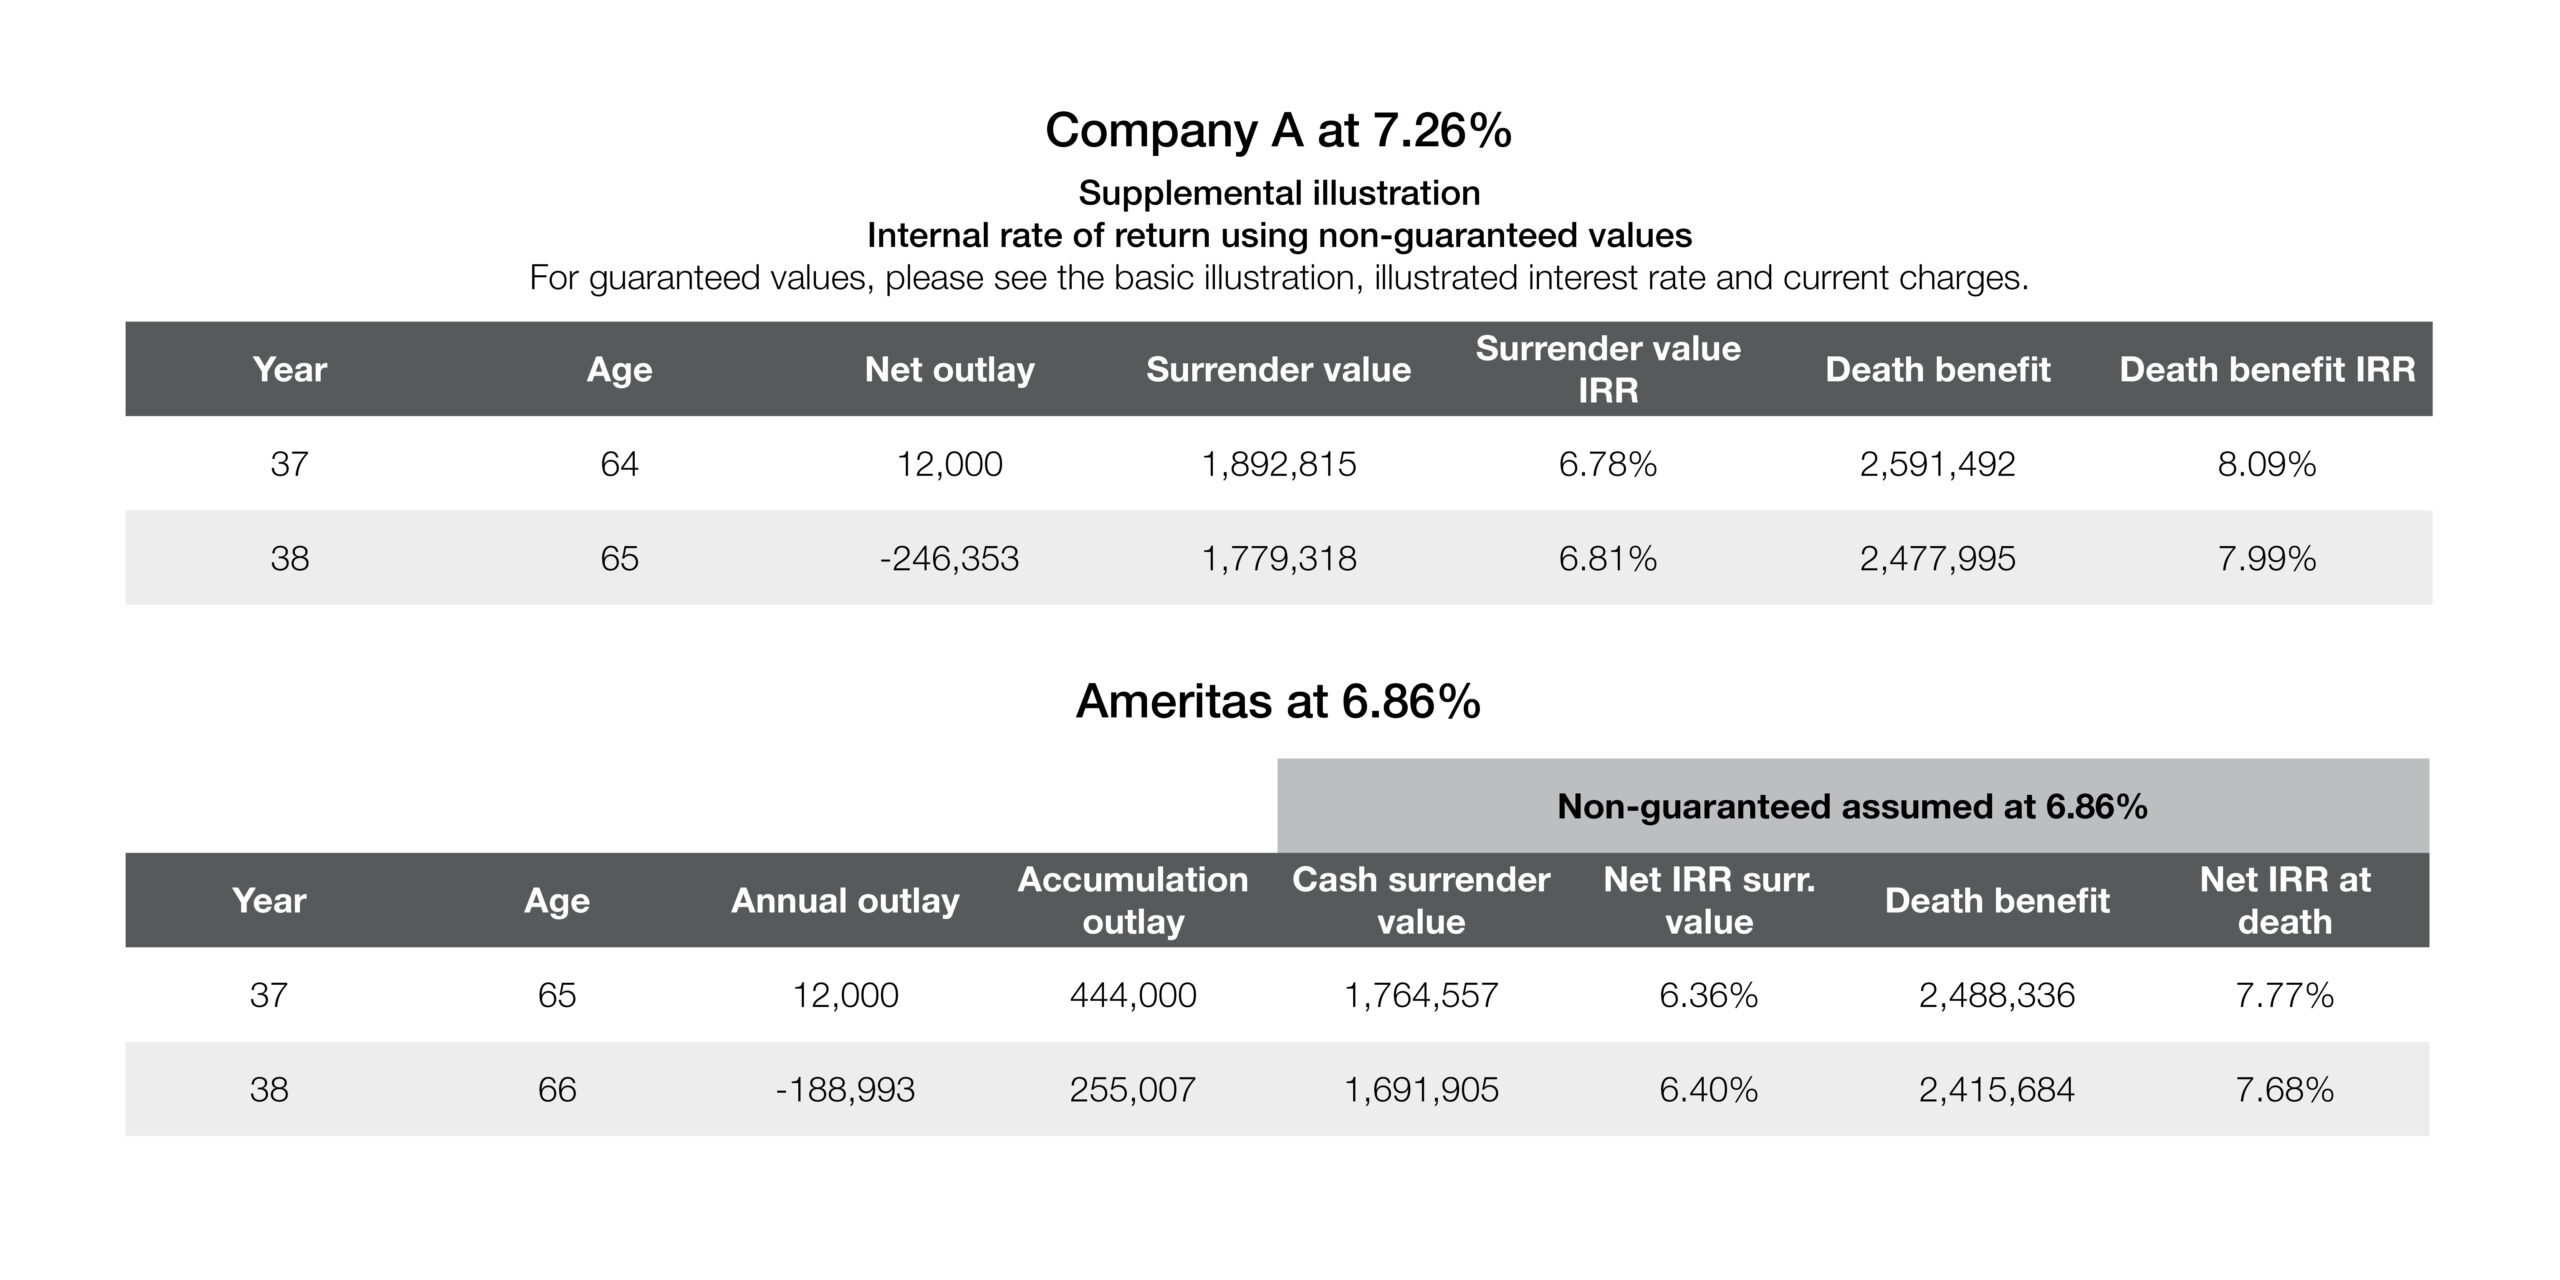 Company A at 7.26% and Ameritas at 6.86% chart